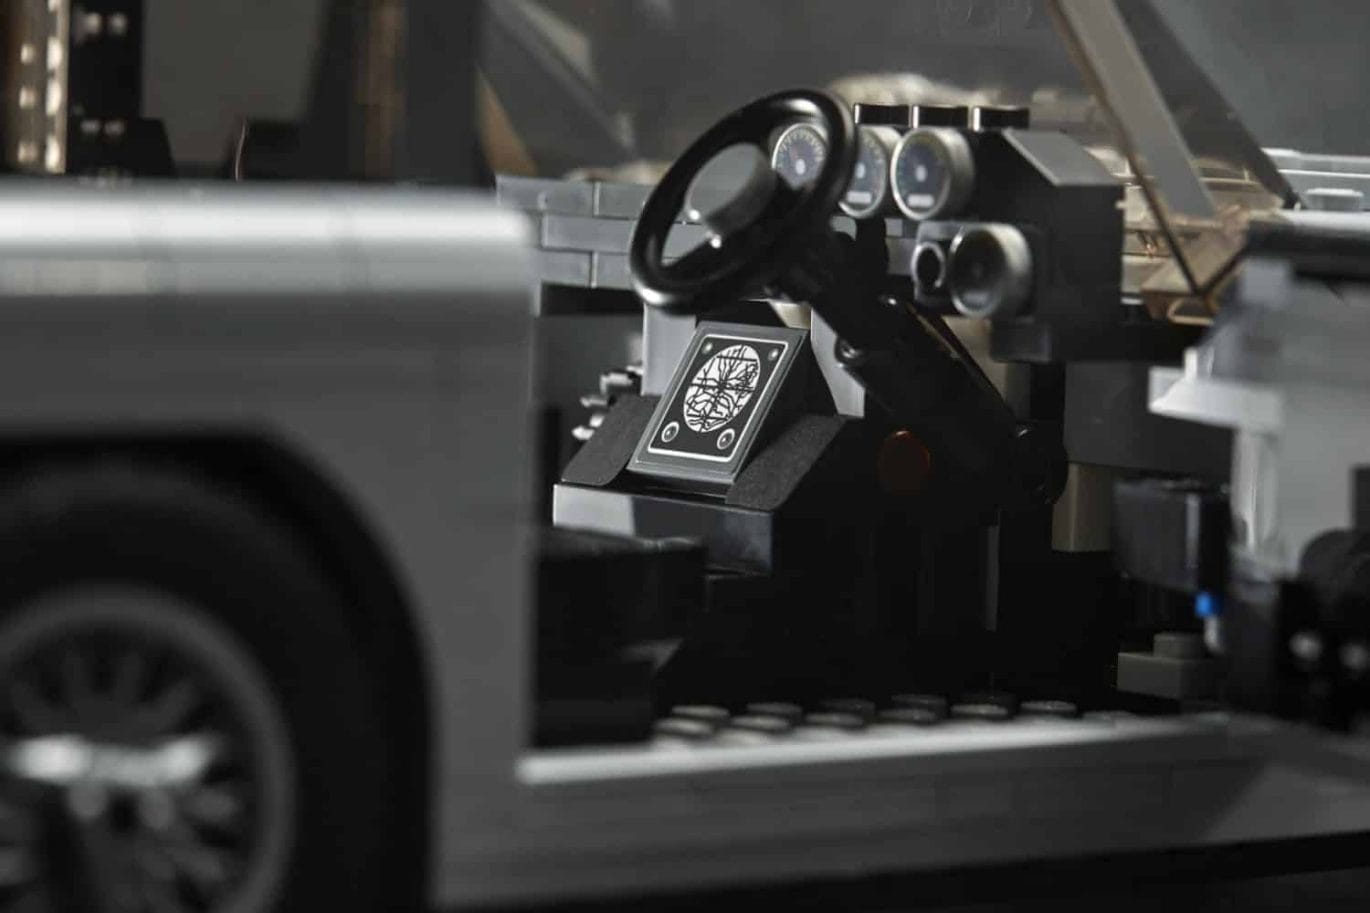 De auto van James Bond van LEGO